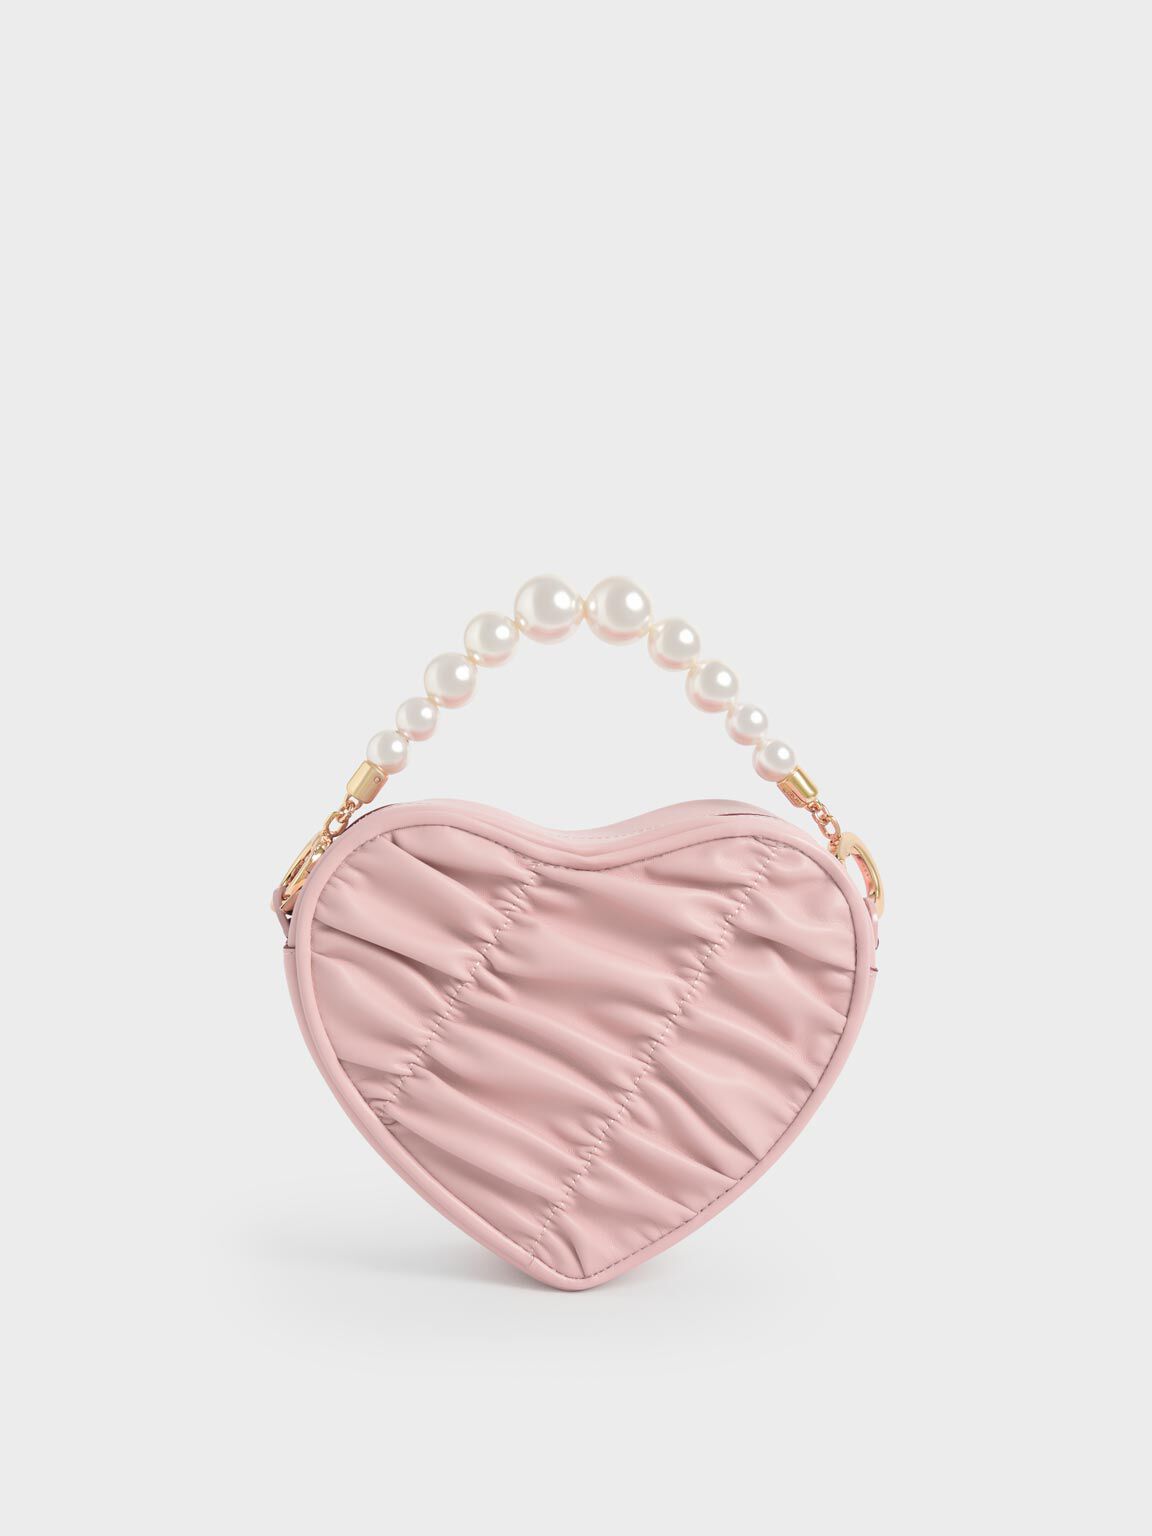 串珠愛心手提包, 粉紅色, hi-res